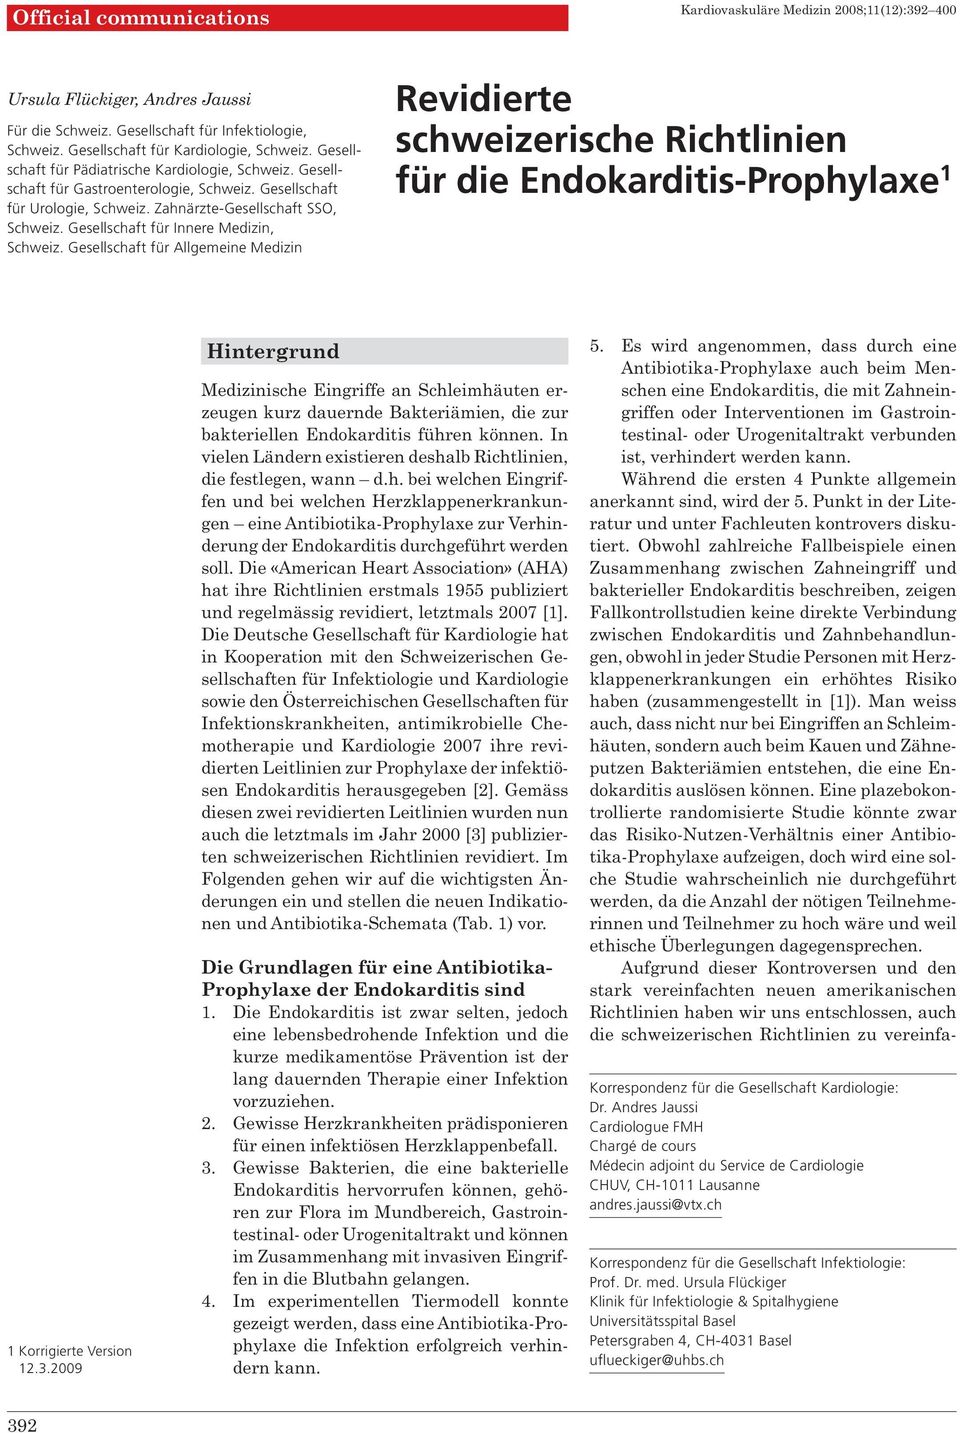 Gesellschaft für Innere Medizin, Schweiz. Gesellschaft für Allgemeine Medizin Revidierte schweizerische Richtlinien für die Endokarditis-Prophylaxe 1 1 Korrigierte Version 12.3.